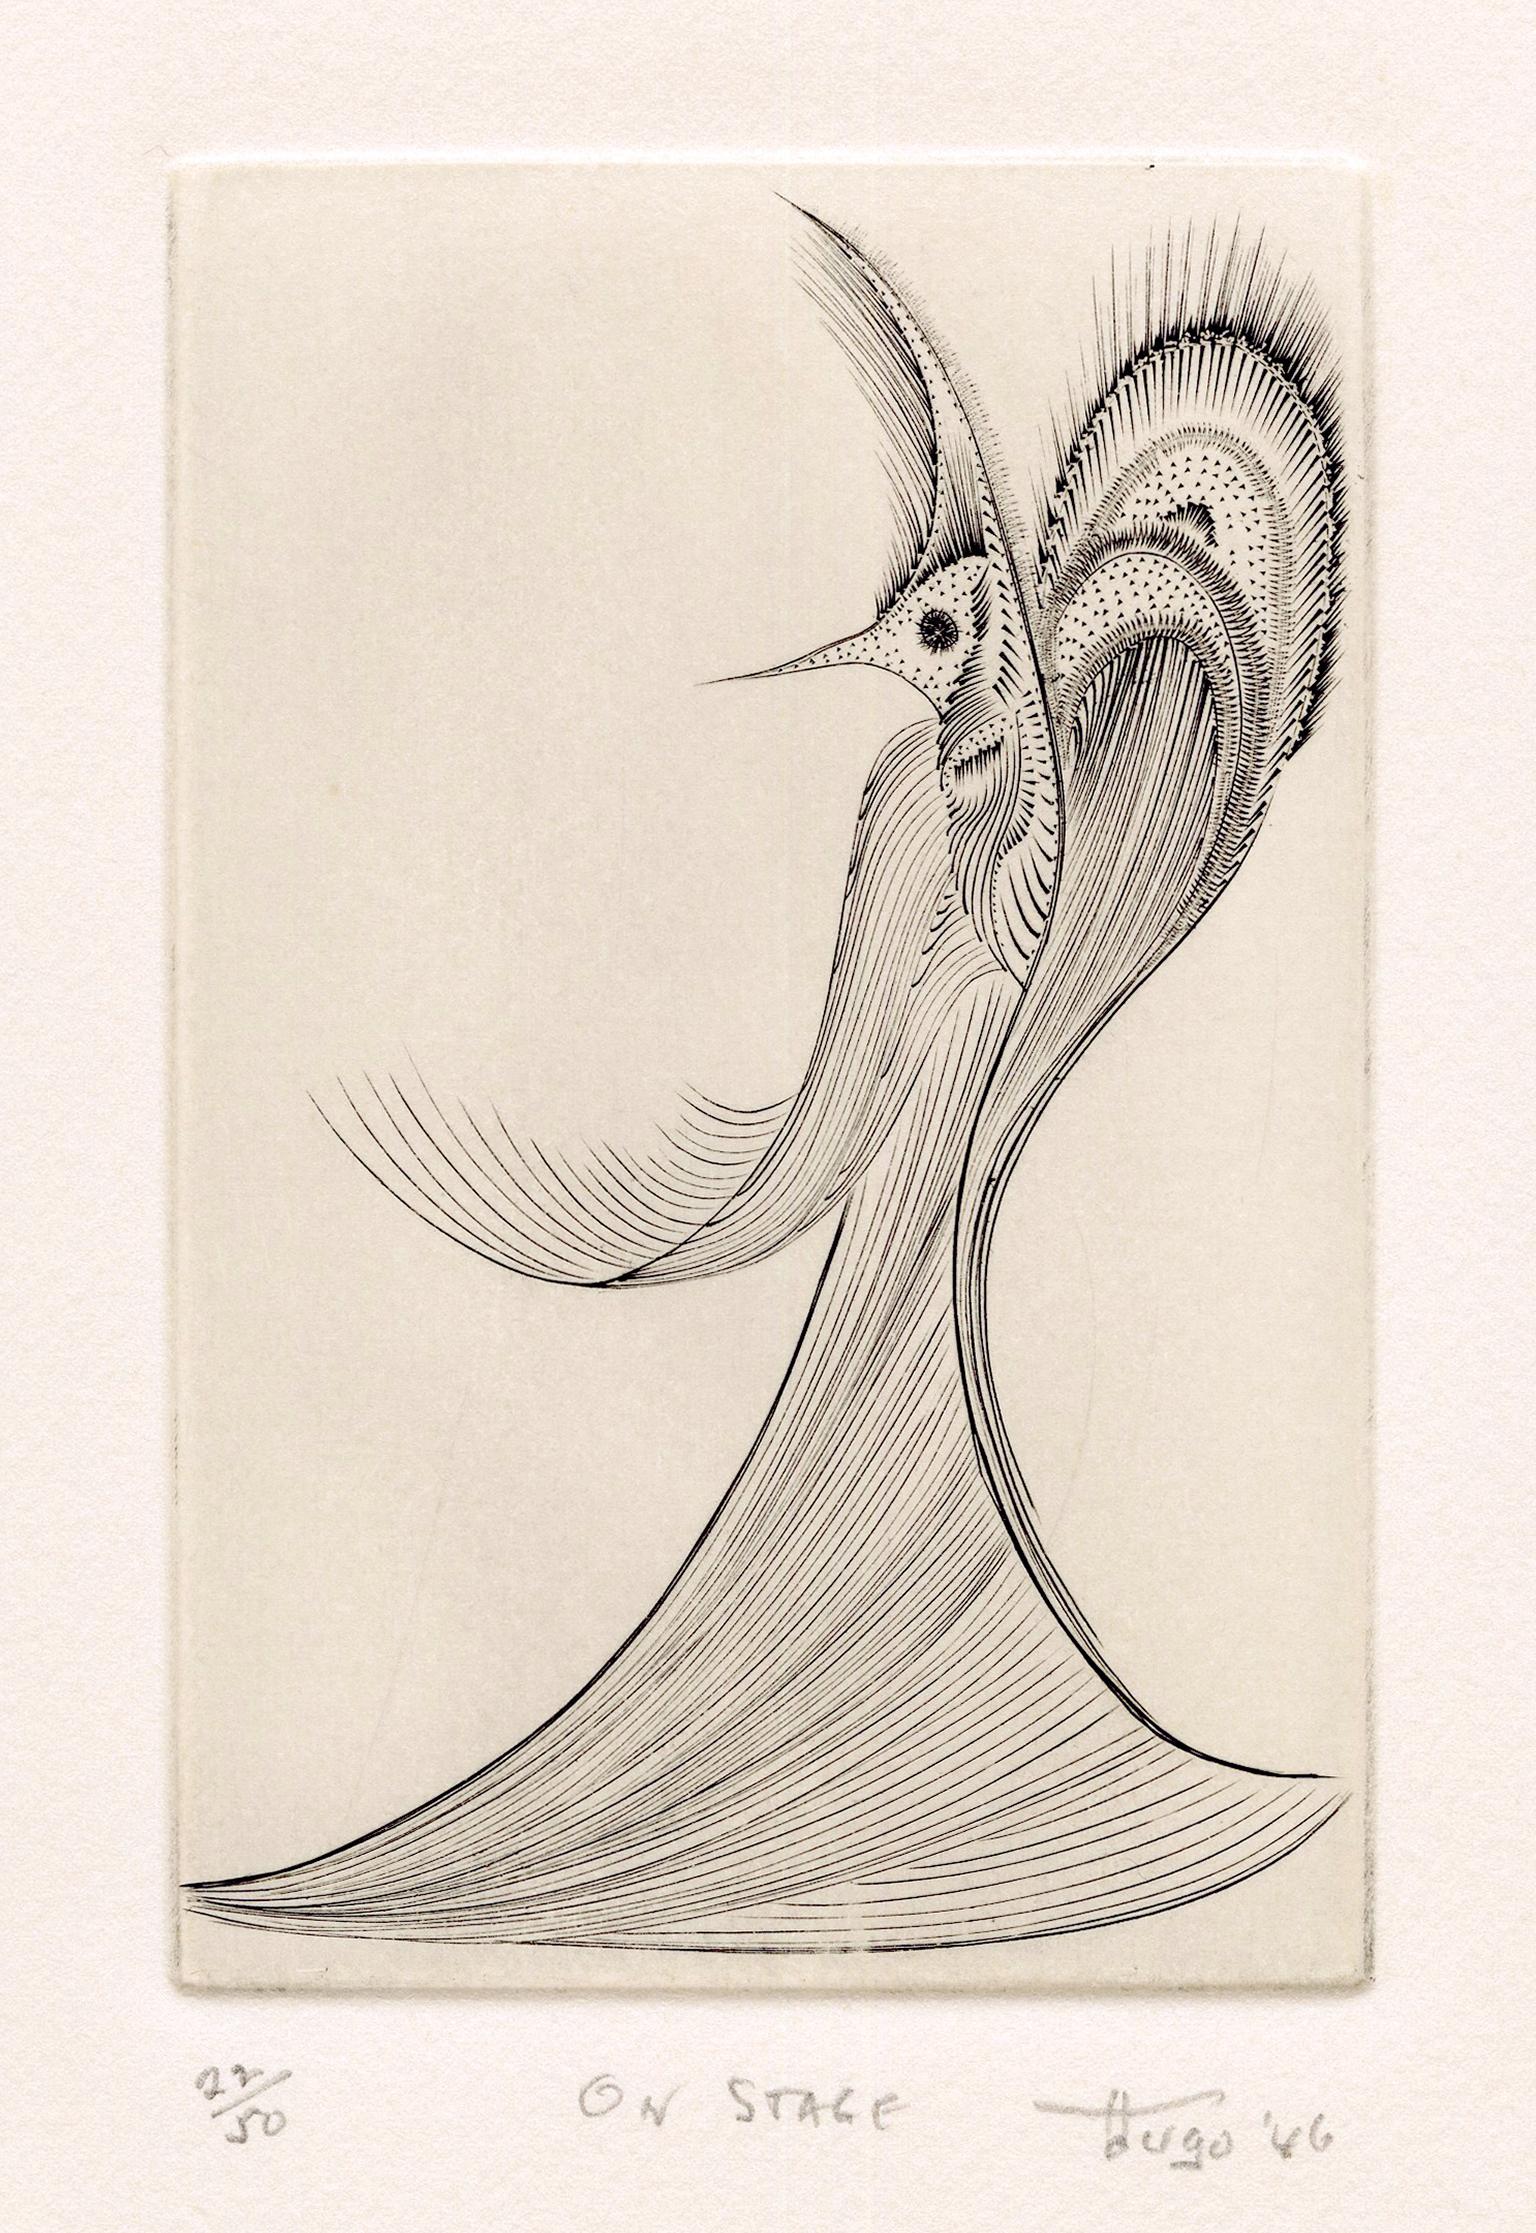 Ian Hugo Figurative Print - 'On Stage' — Mid-Century Surrealism, Atelier 17